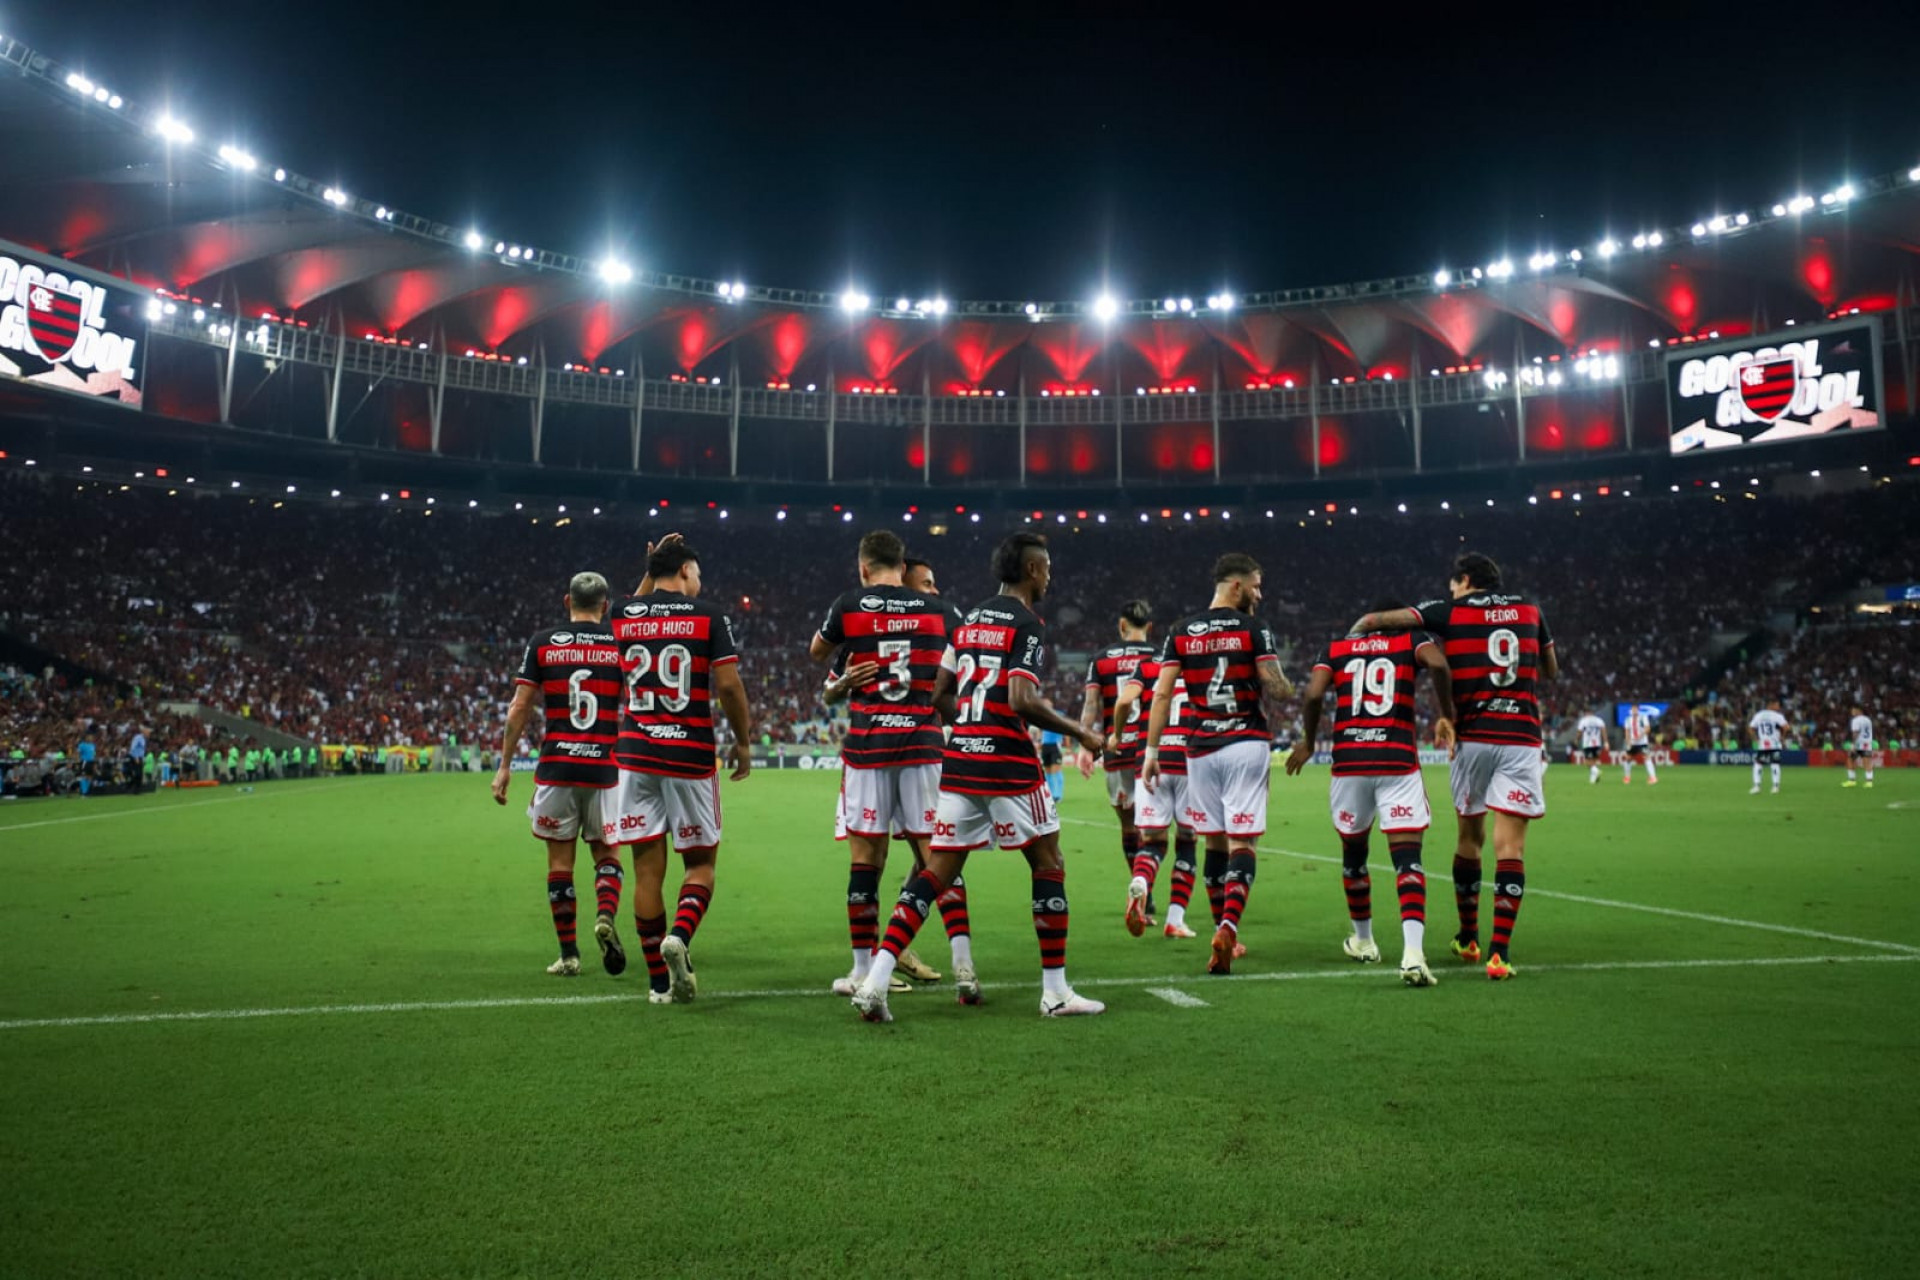 Time do Flamengo comemorando o gol marcado por Léo Ortiz - Renan Areias/Agência O Dia